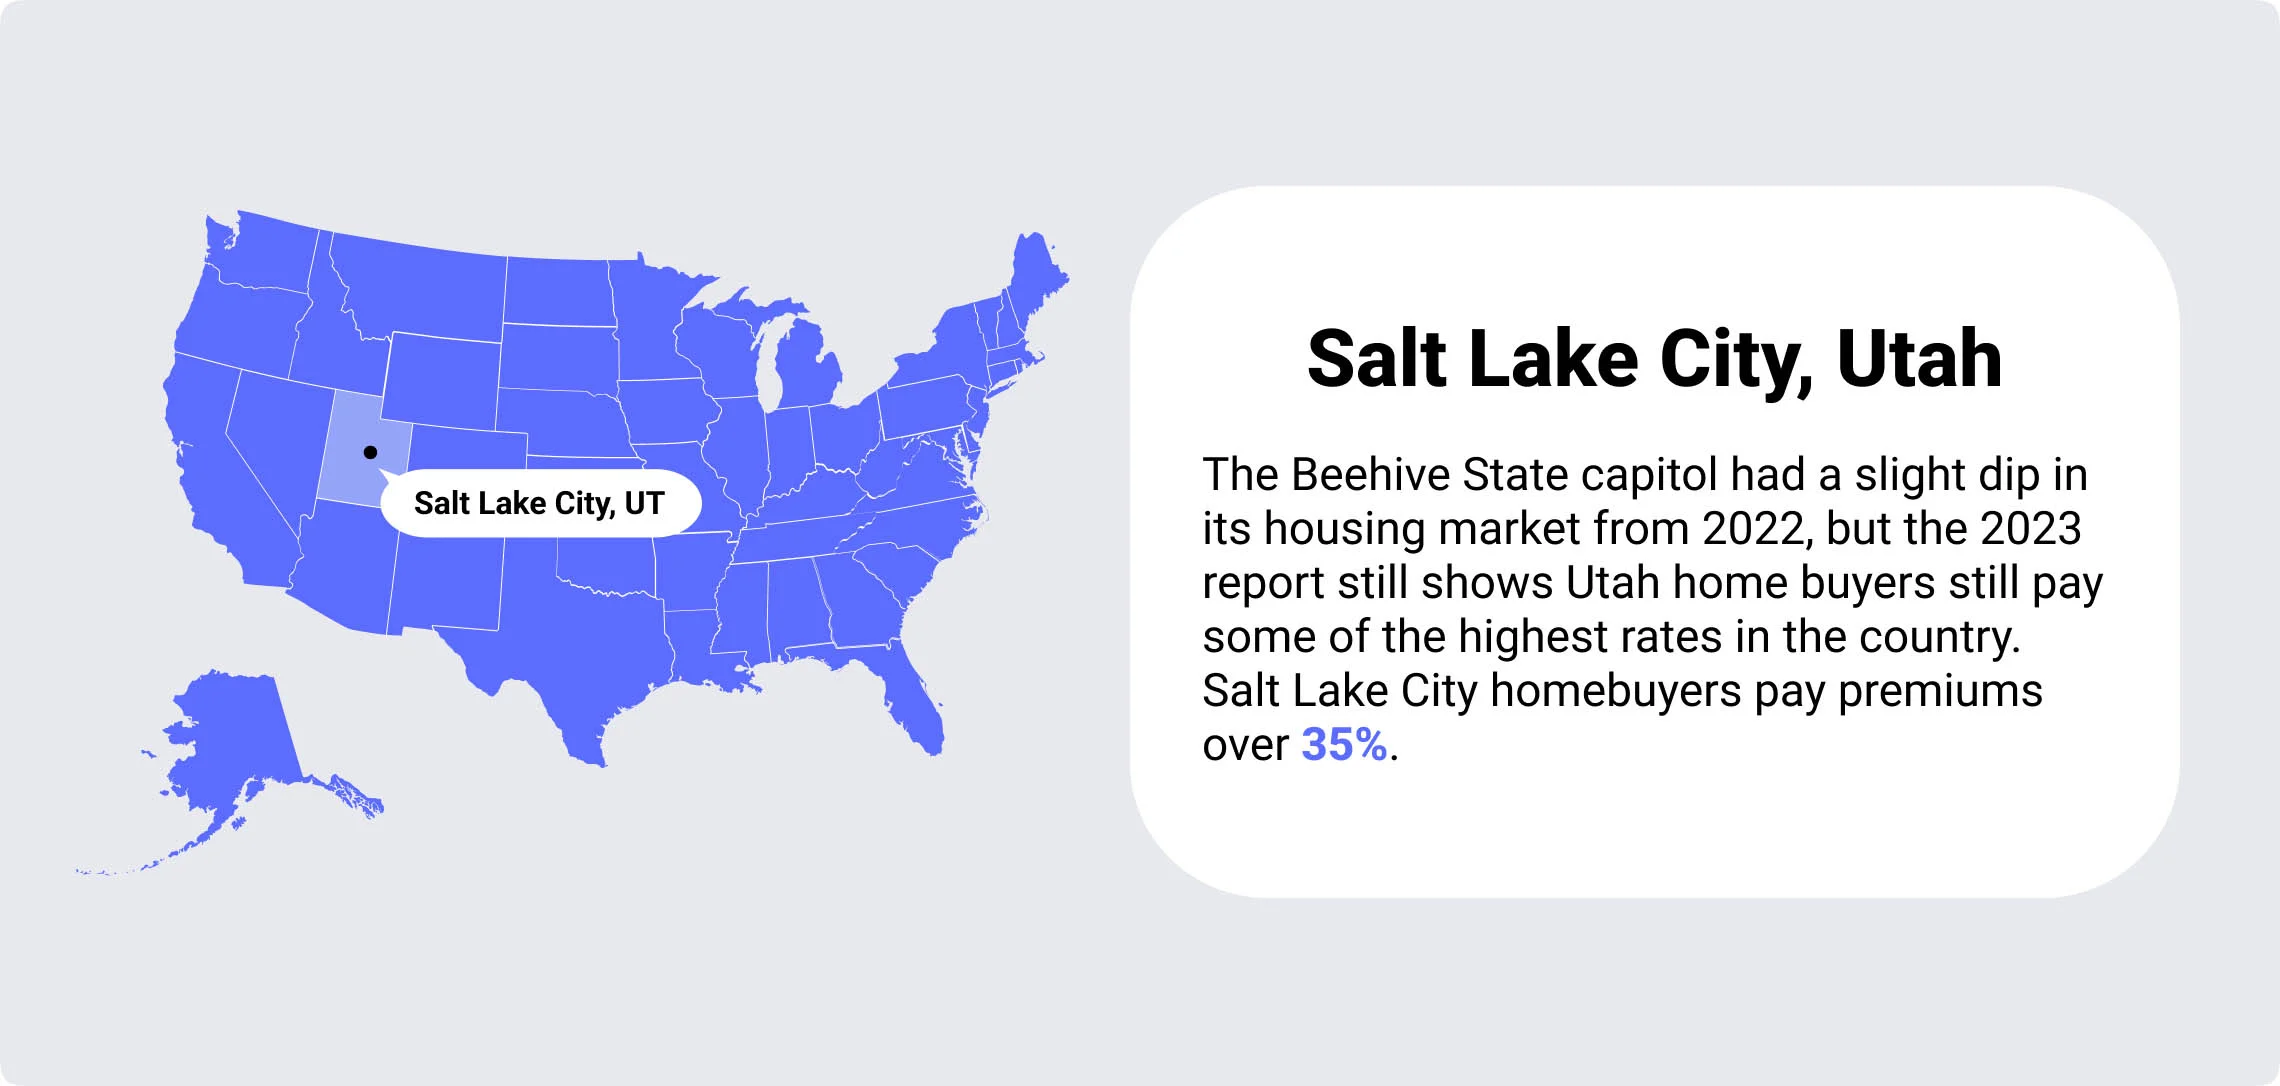 Salt Lake City Utah overvalued housing markets